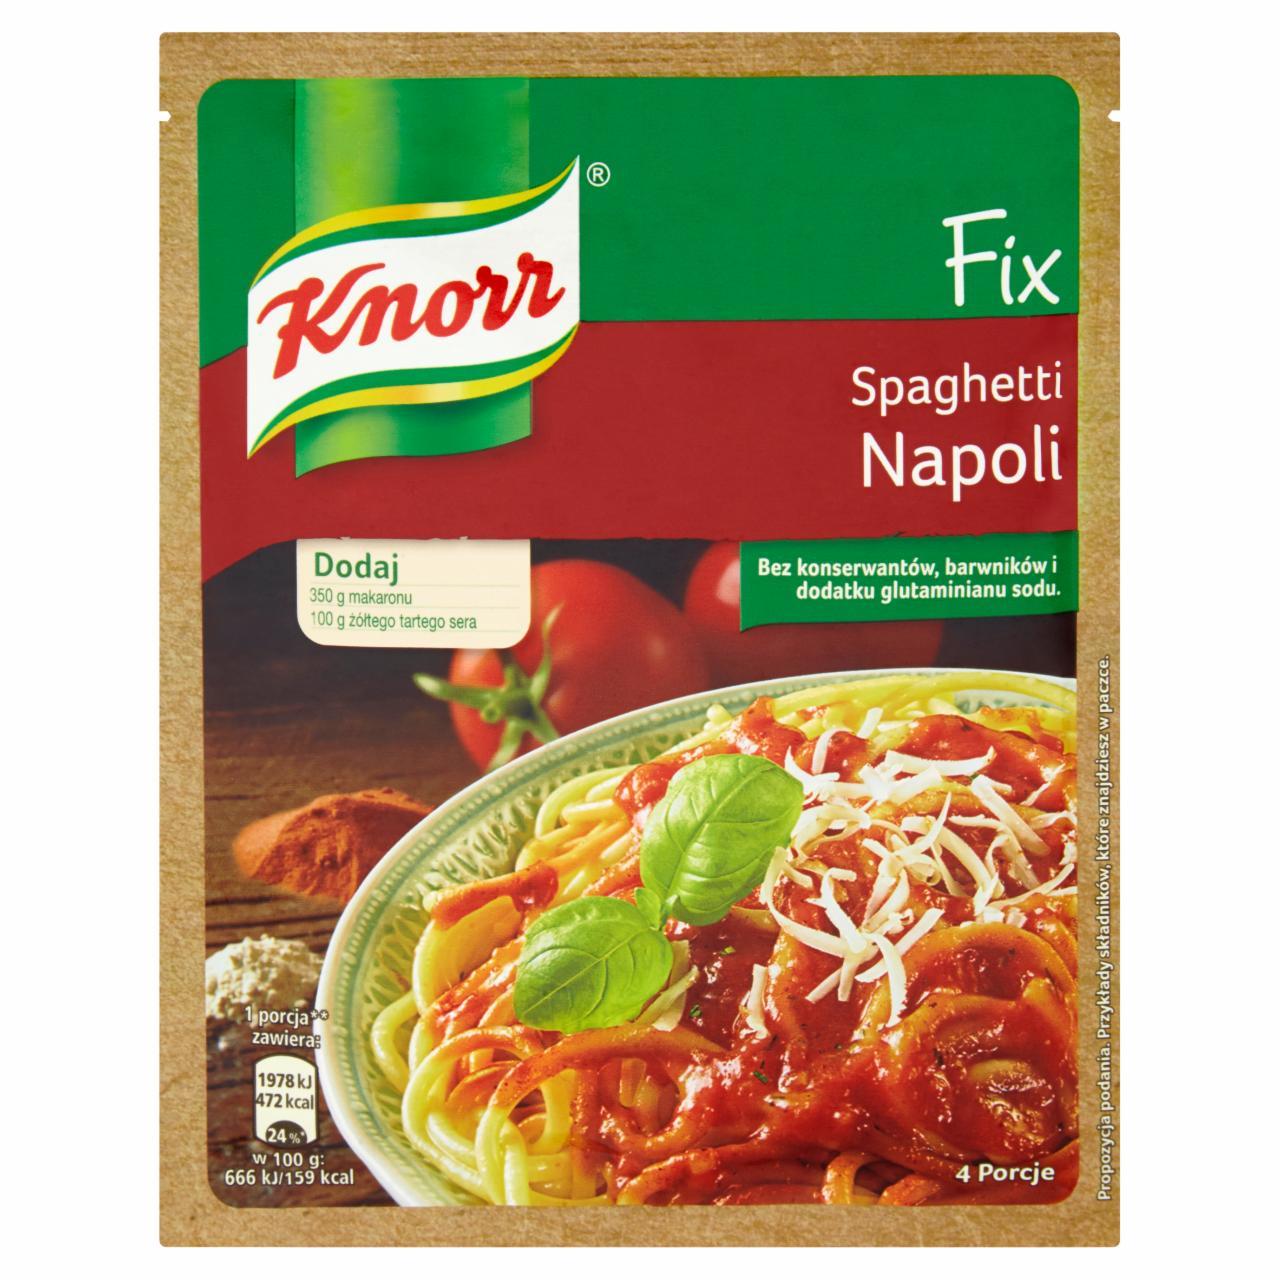 Zdjęcia - Fix spaghetti napoli Knorr